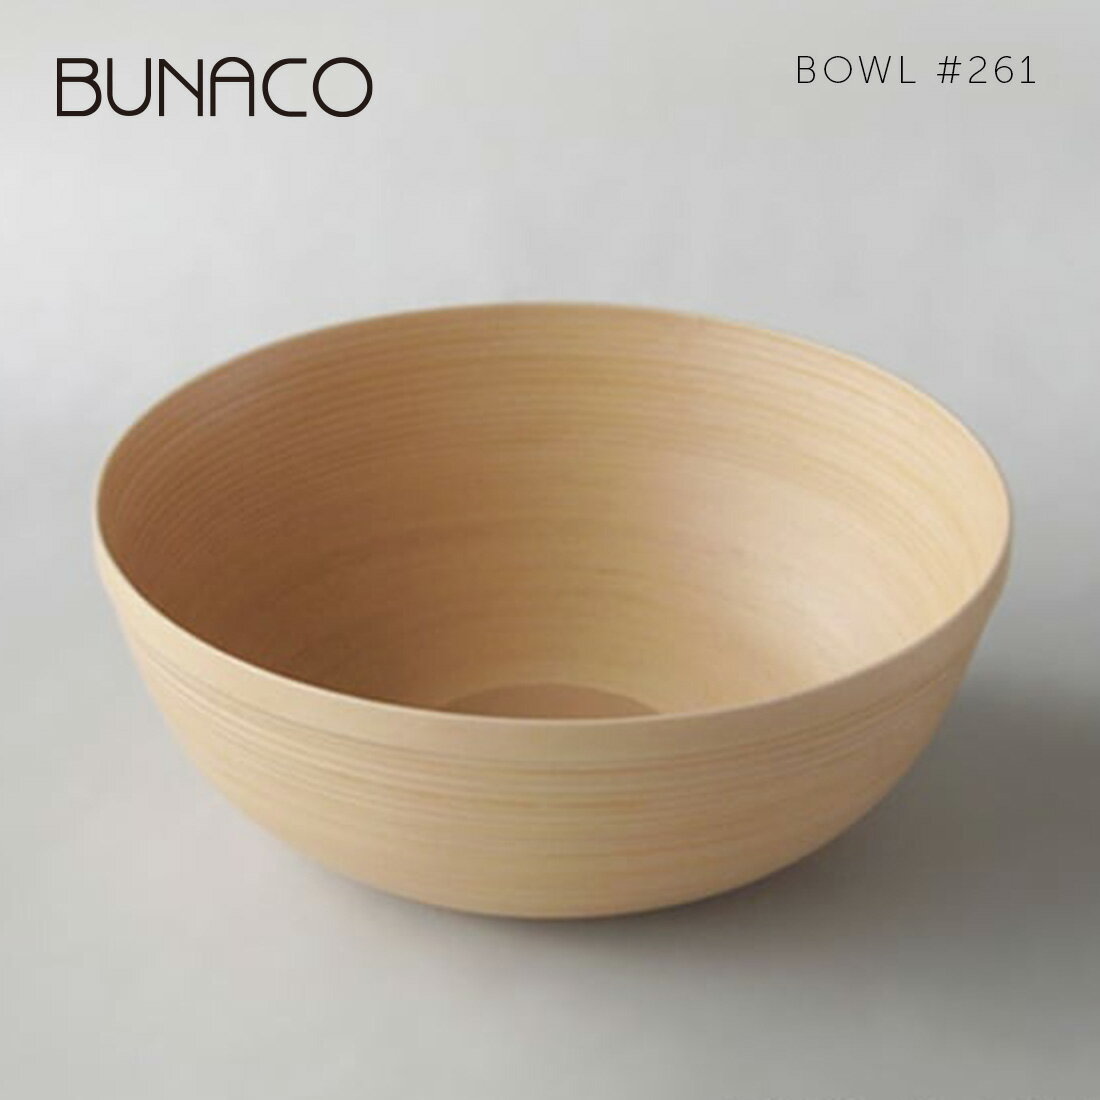 BUNACO ブナコ テーブルウェア BOWL #261ナチュラルTABLEWARE サラダボウル ボール 木工品 ブナ材